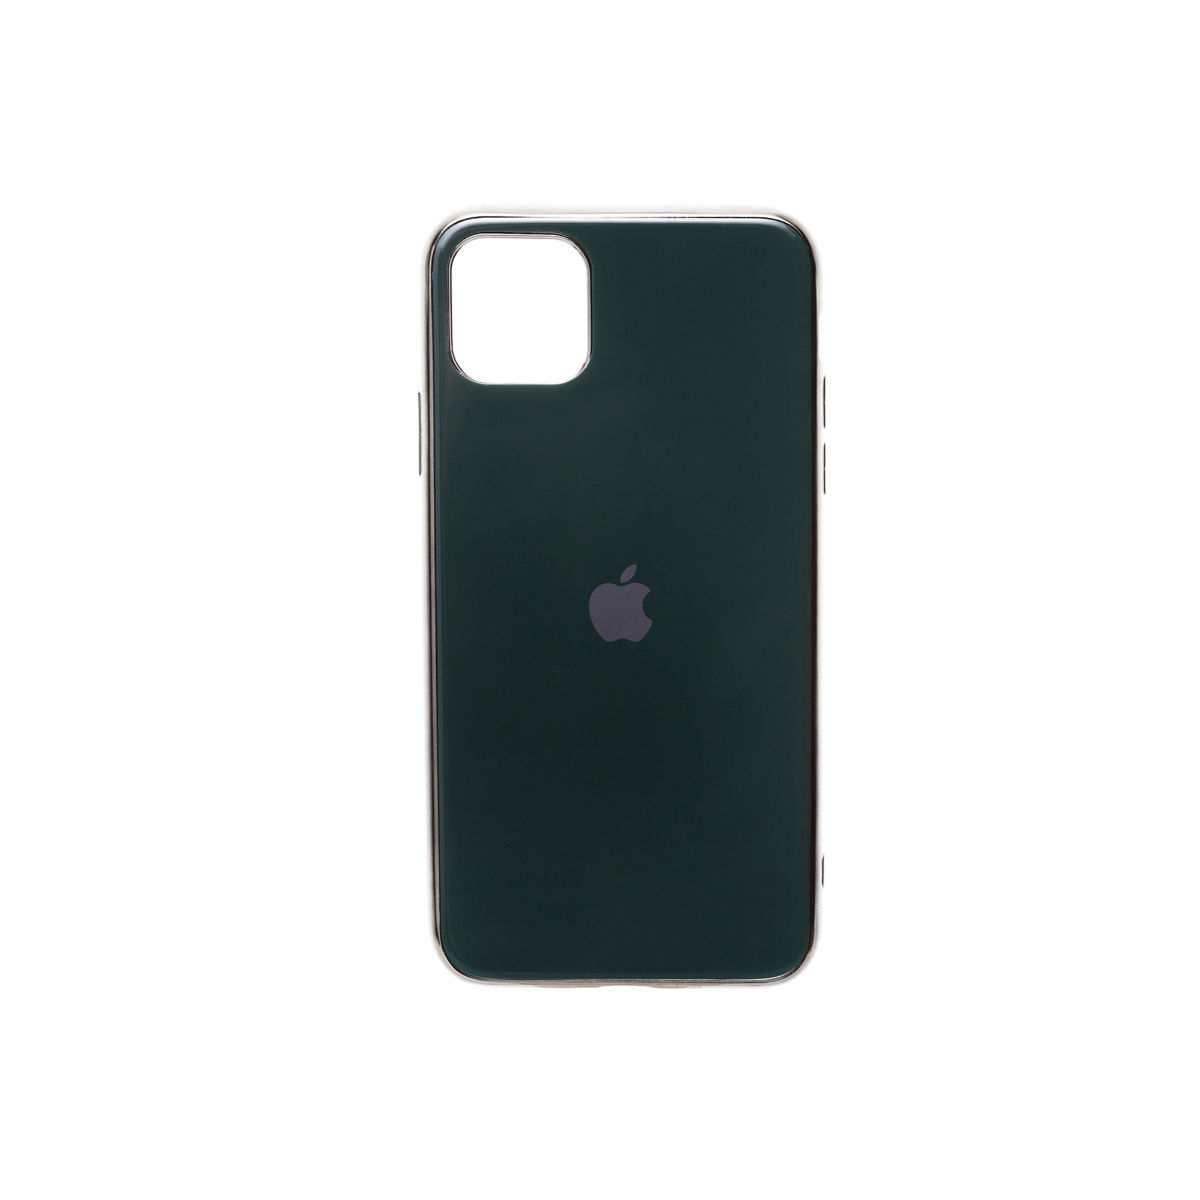 Treemoda Iphone 11 Promax Black Glossy Hardcase Mobile Case